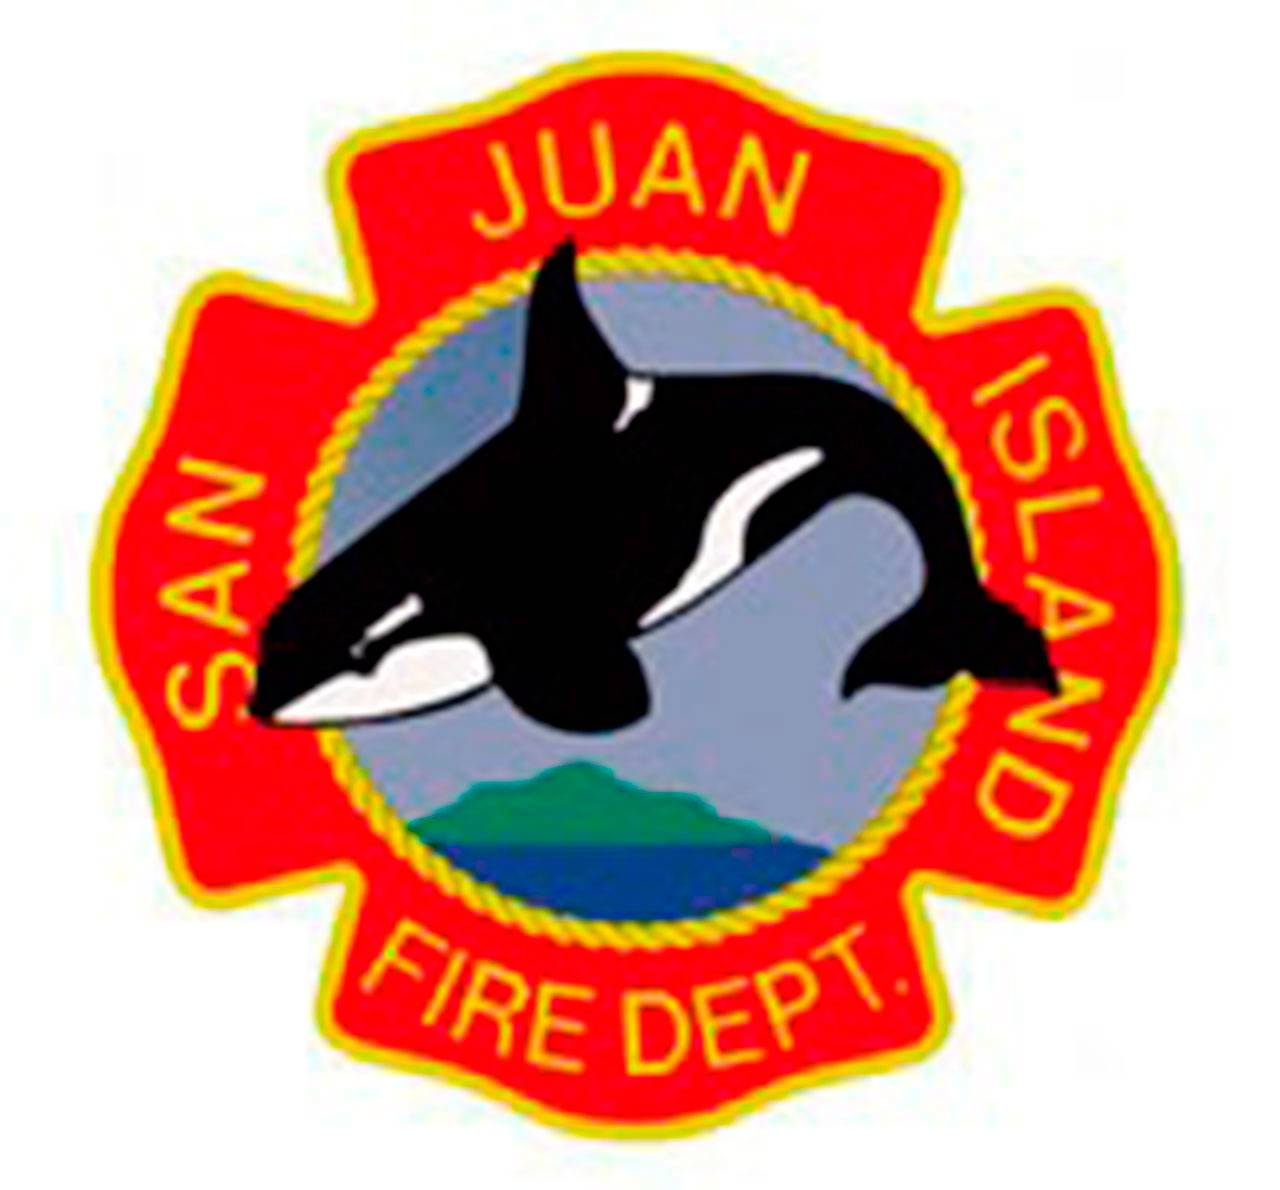 Meet San Juan Island Fire chief candidates on Sept. 16